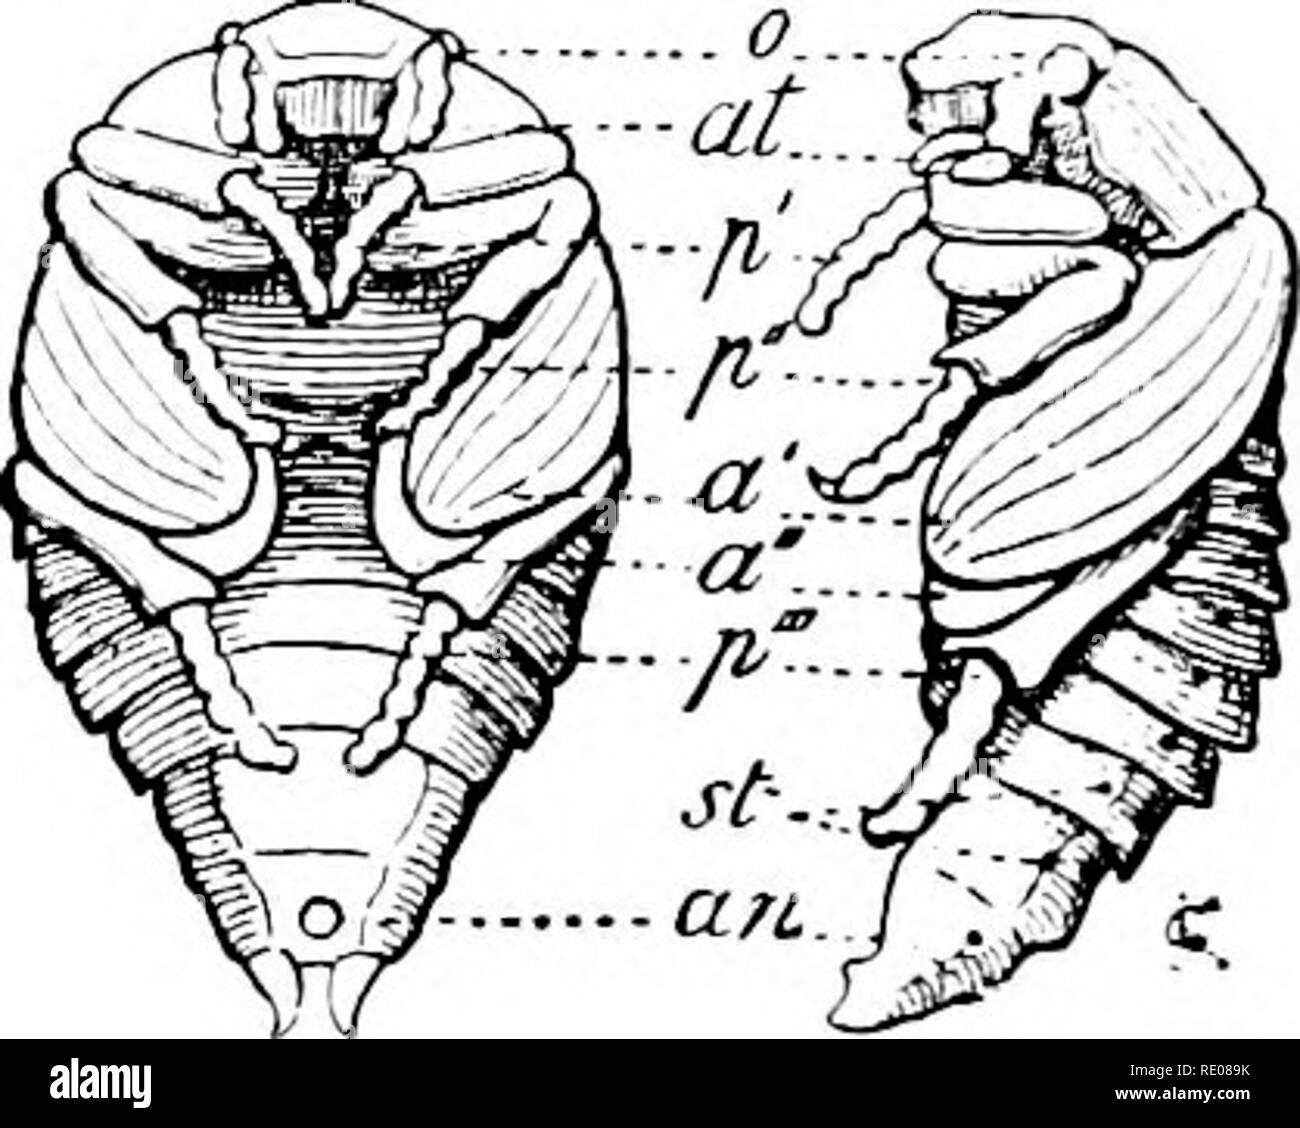 . Un manuale di zoologia. Zoologia. Fig. boo-larva e pupa di maggio beetle, à, a", fore e hind ali ; un, ano; at, antennie; u, gli occhi; p'-p" gambe ; st, spiracles. Solo la segmentazione del corpo ma l'antenna?, gambe, ali, e spesso le parti di bocca dell'imago sono visibili. Tali cuccioli hanno un certo potere di movimento, come ad esempio la m])x di molti Neuroptera e zanzare, quest'ultimo la salita e la discesa in acqua. La coperta pupa? (Pupa? Obtect;*) al momento di pupation hanno appendici libere che con la fase di indurimento della chitina diventare appressed strettamente al corpo, in modo Foto Stock